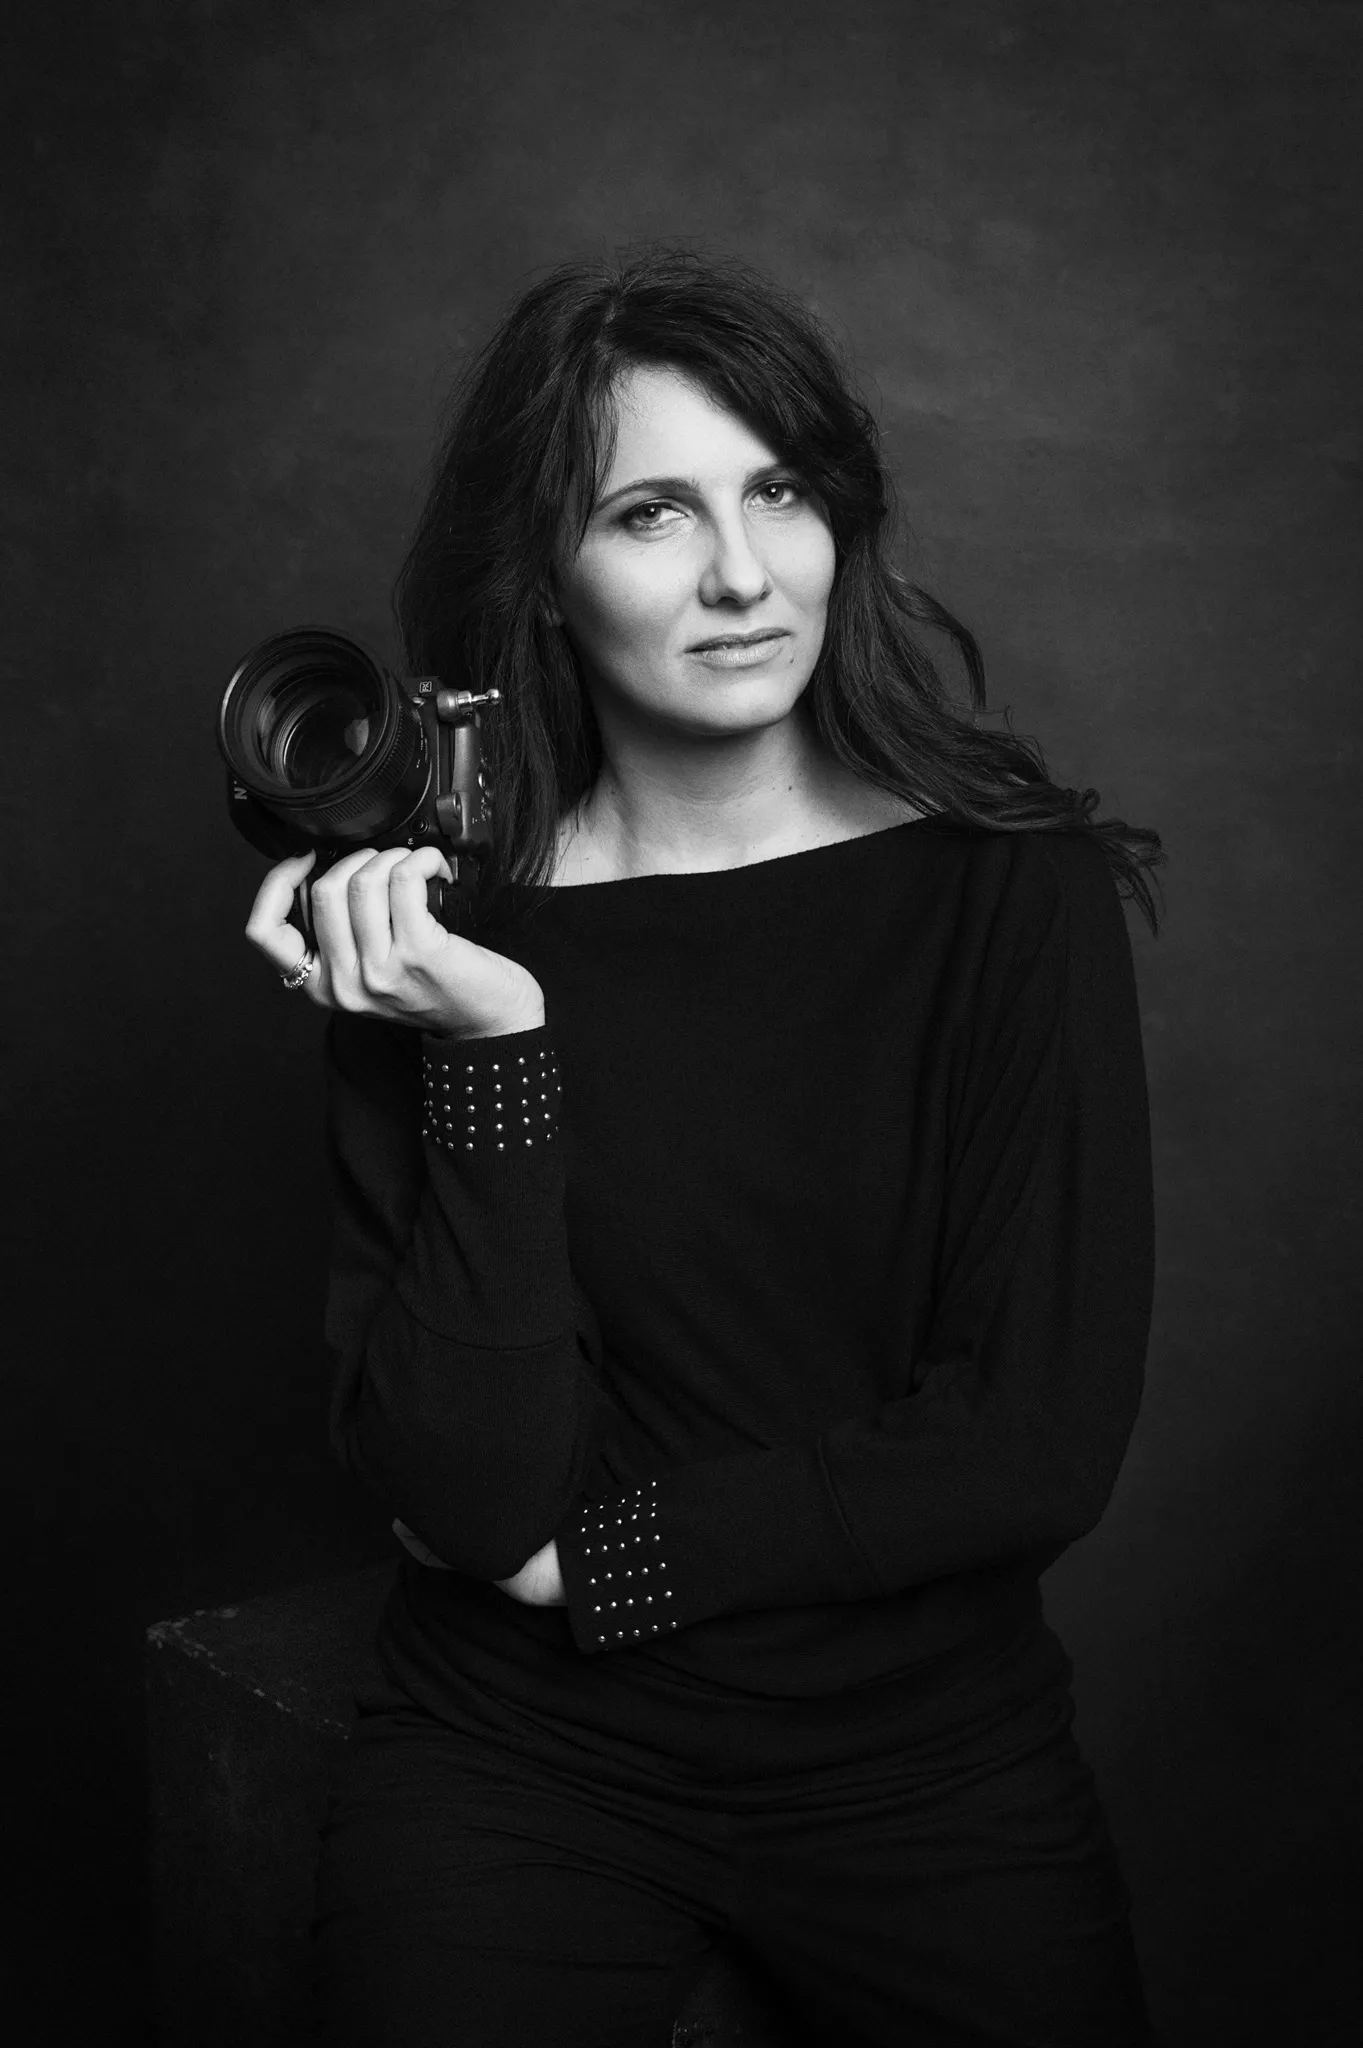 fotografa di ritratto Milano Federica Nardese - fotografia di professionista fotografa, vestita di nero, su sfondo pittorico scuro, macchina fotografica in mano.